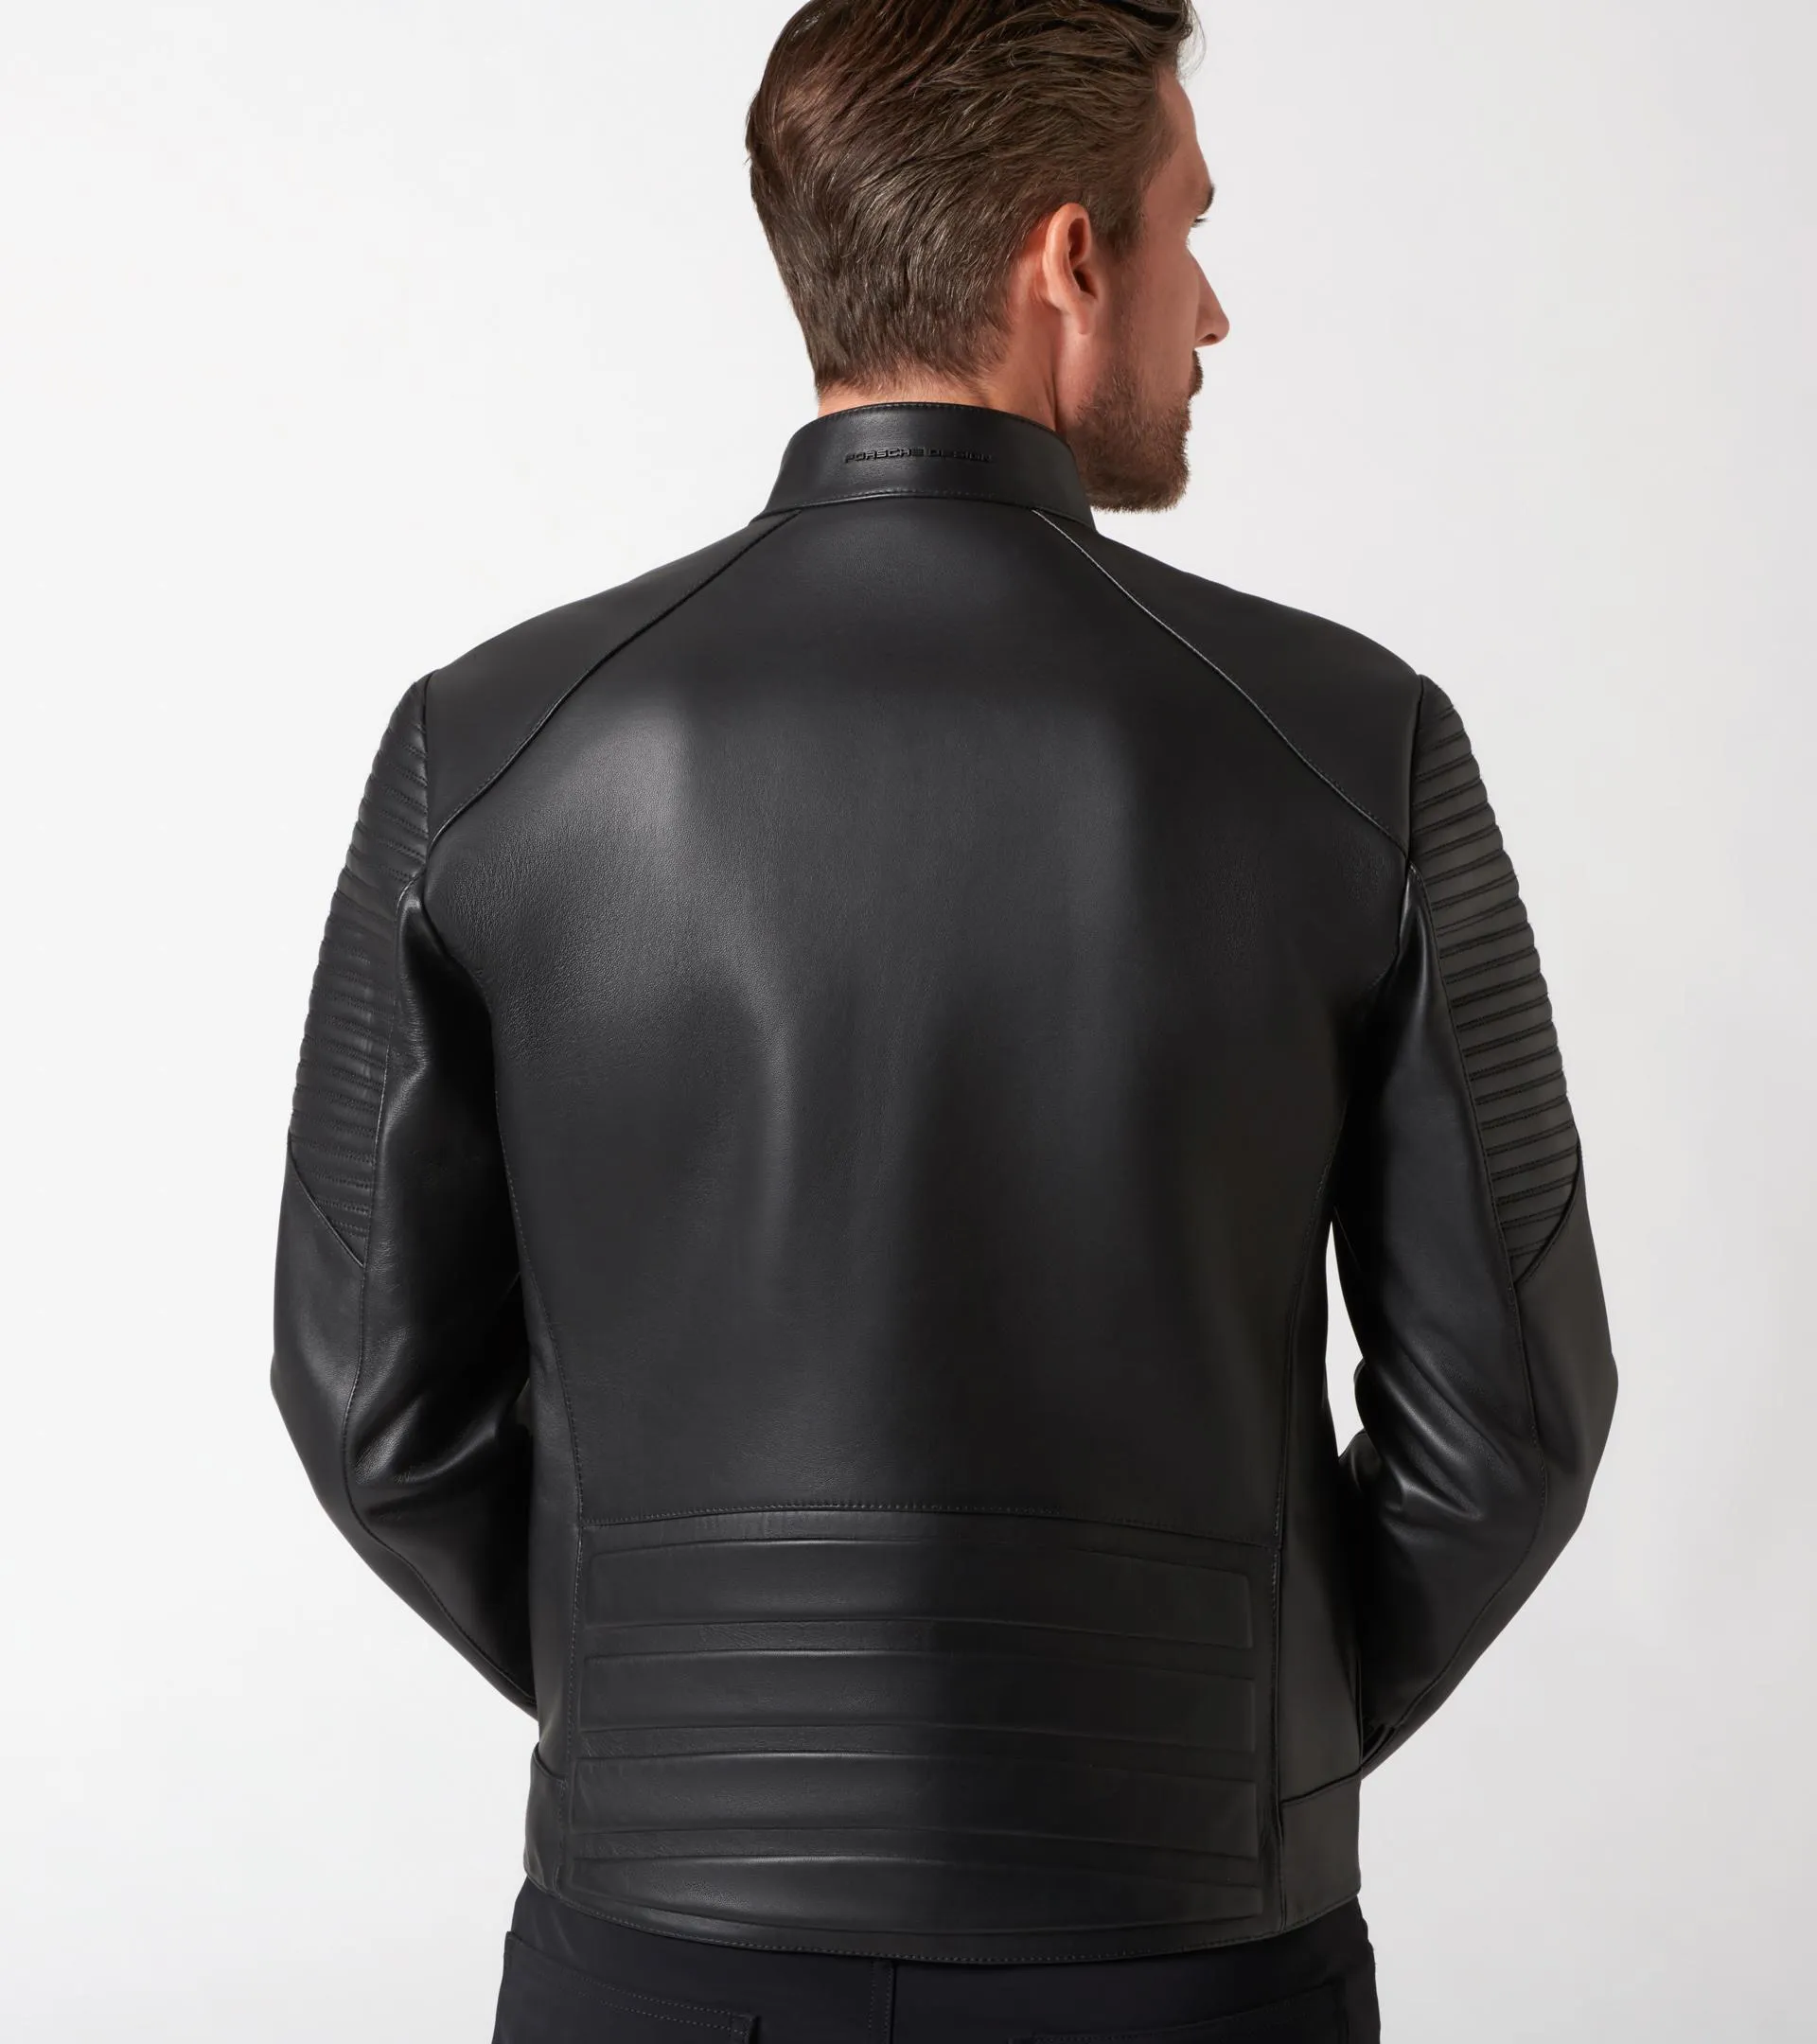 Asymmetric Zip MotoX Leather Jacket | PORSCHE SHOP